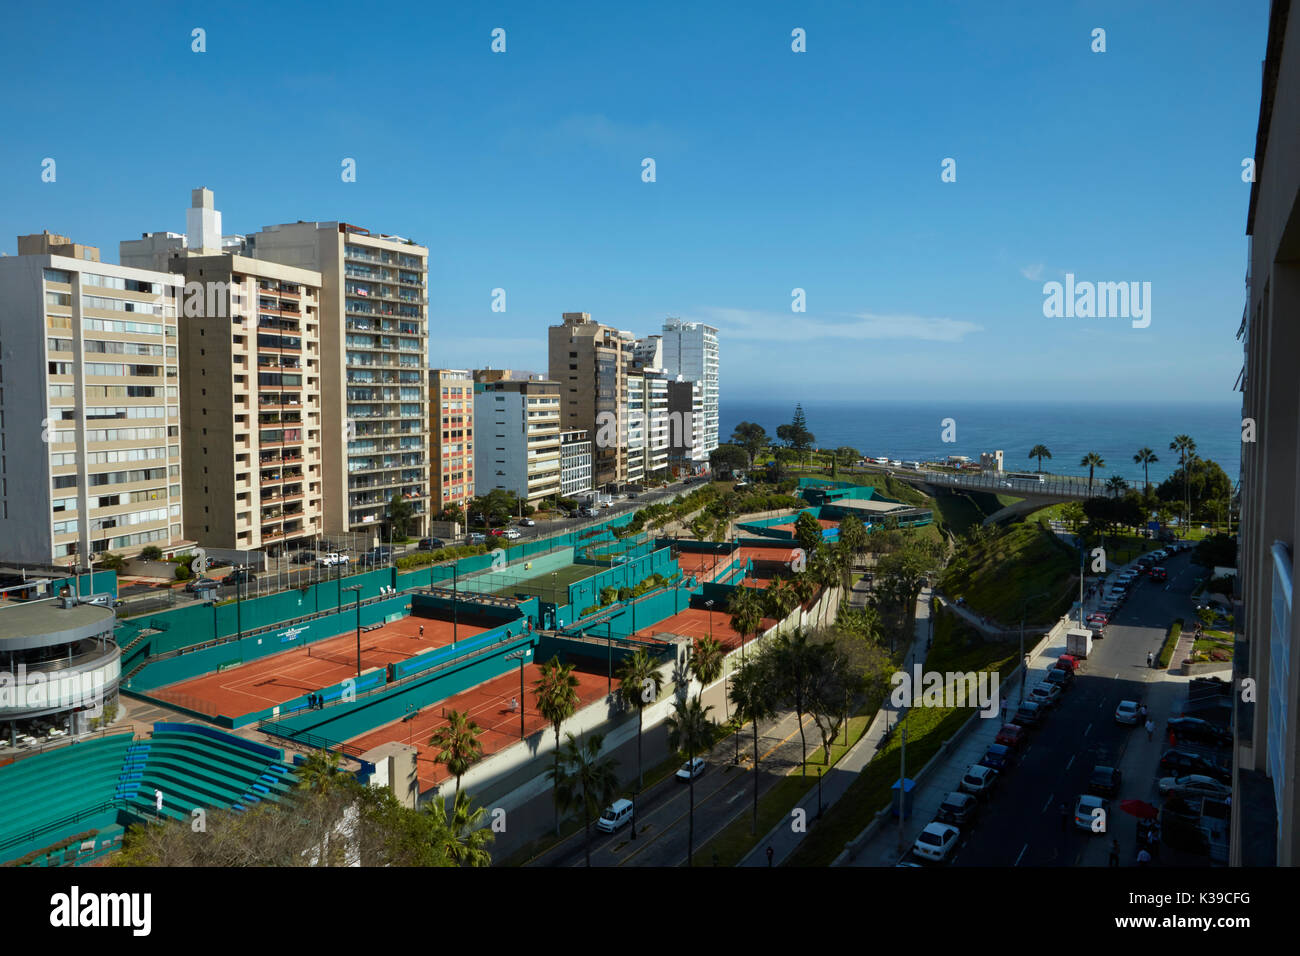 Appartements et terrains de tennis le long du Malecon Balta, Miraflores, Lima, Pérou, Amérique du Sud Banque D'Images